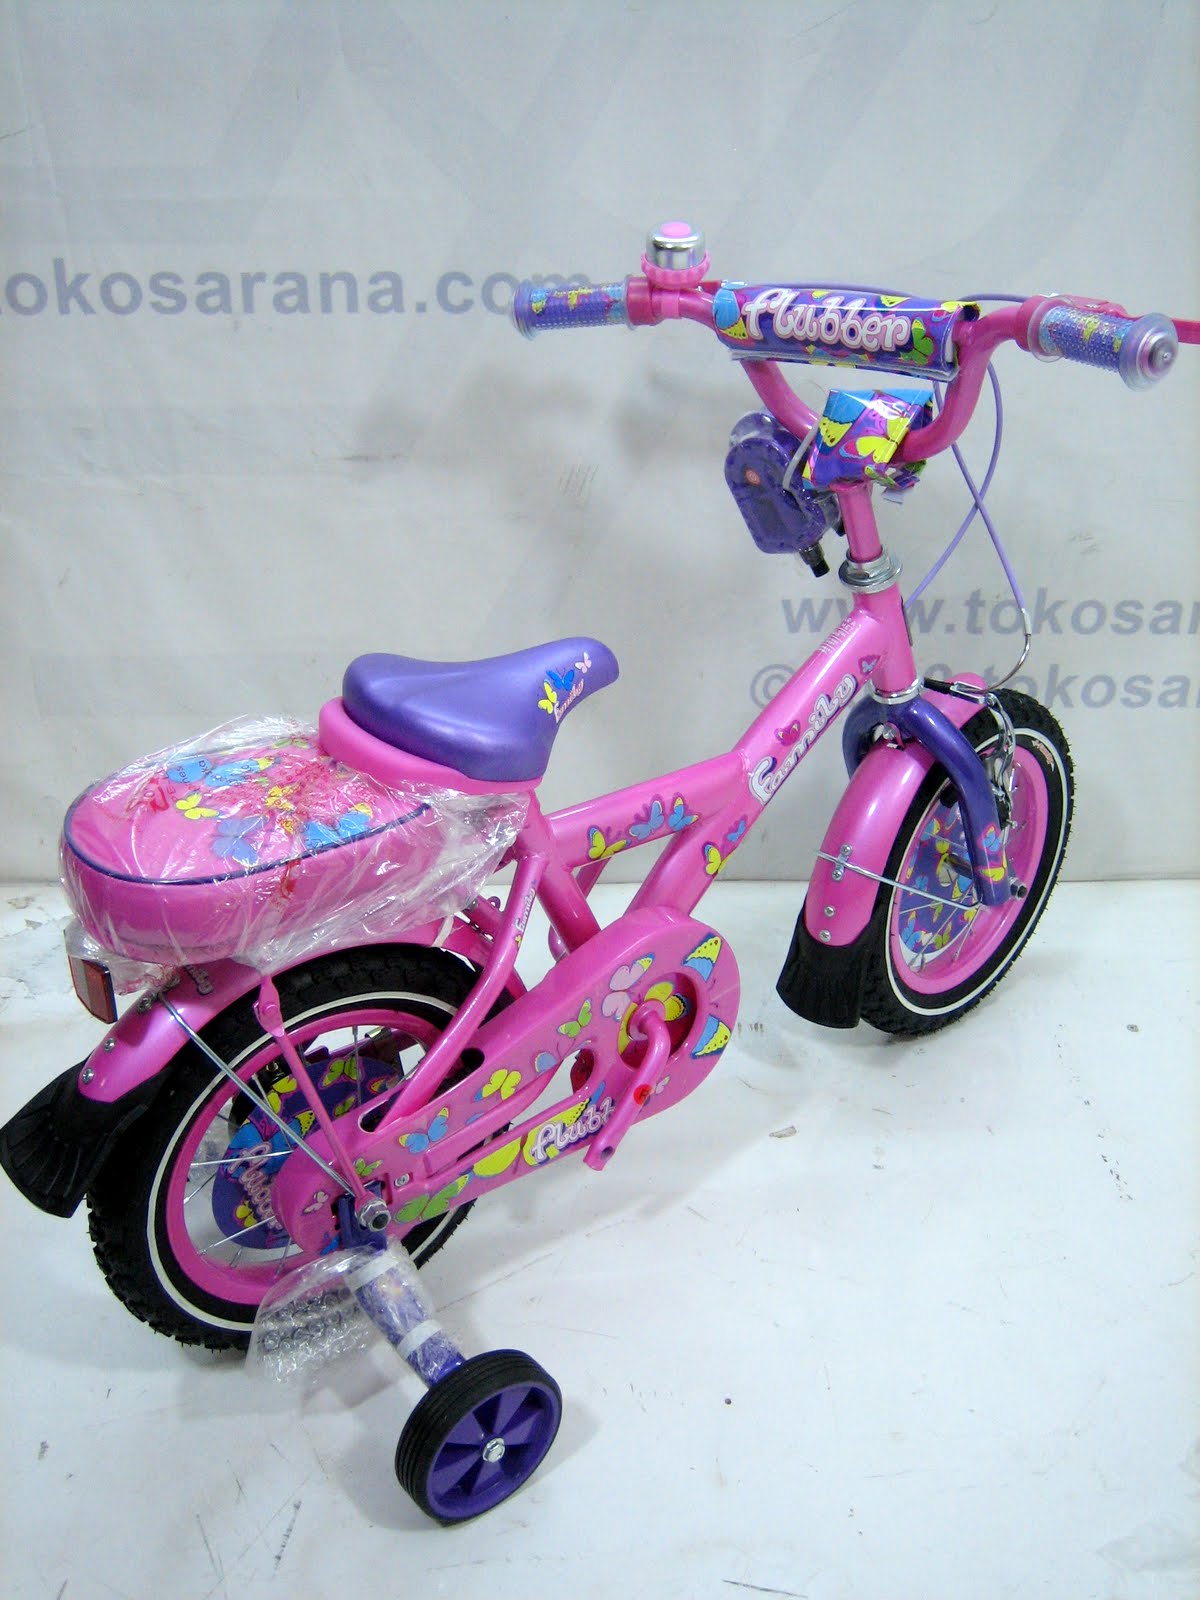 Clearance Sale: Sepeda, Mainan Anak dan Perlengkapan Bayi 